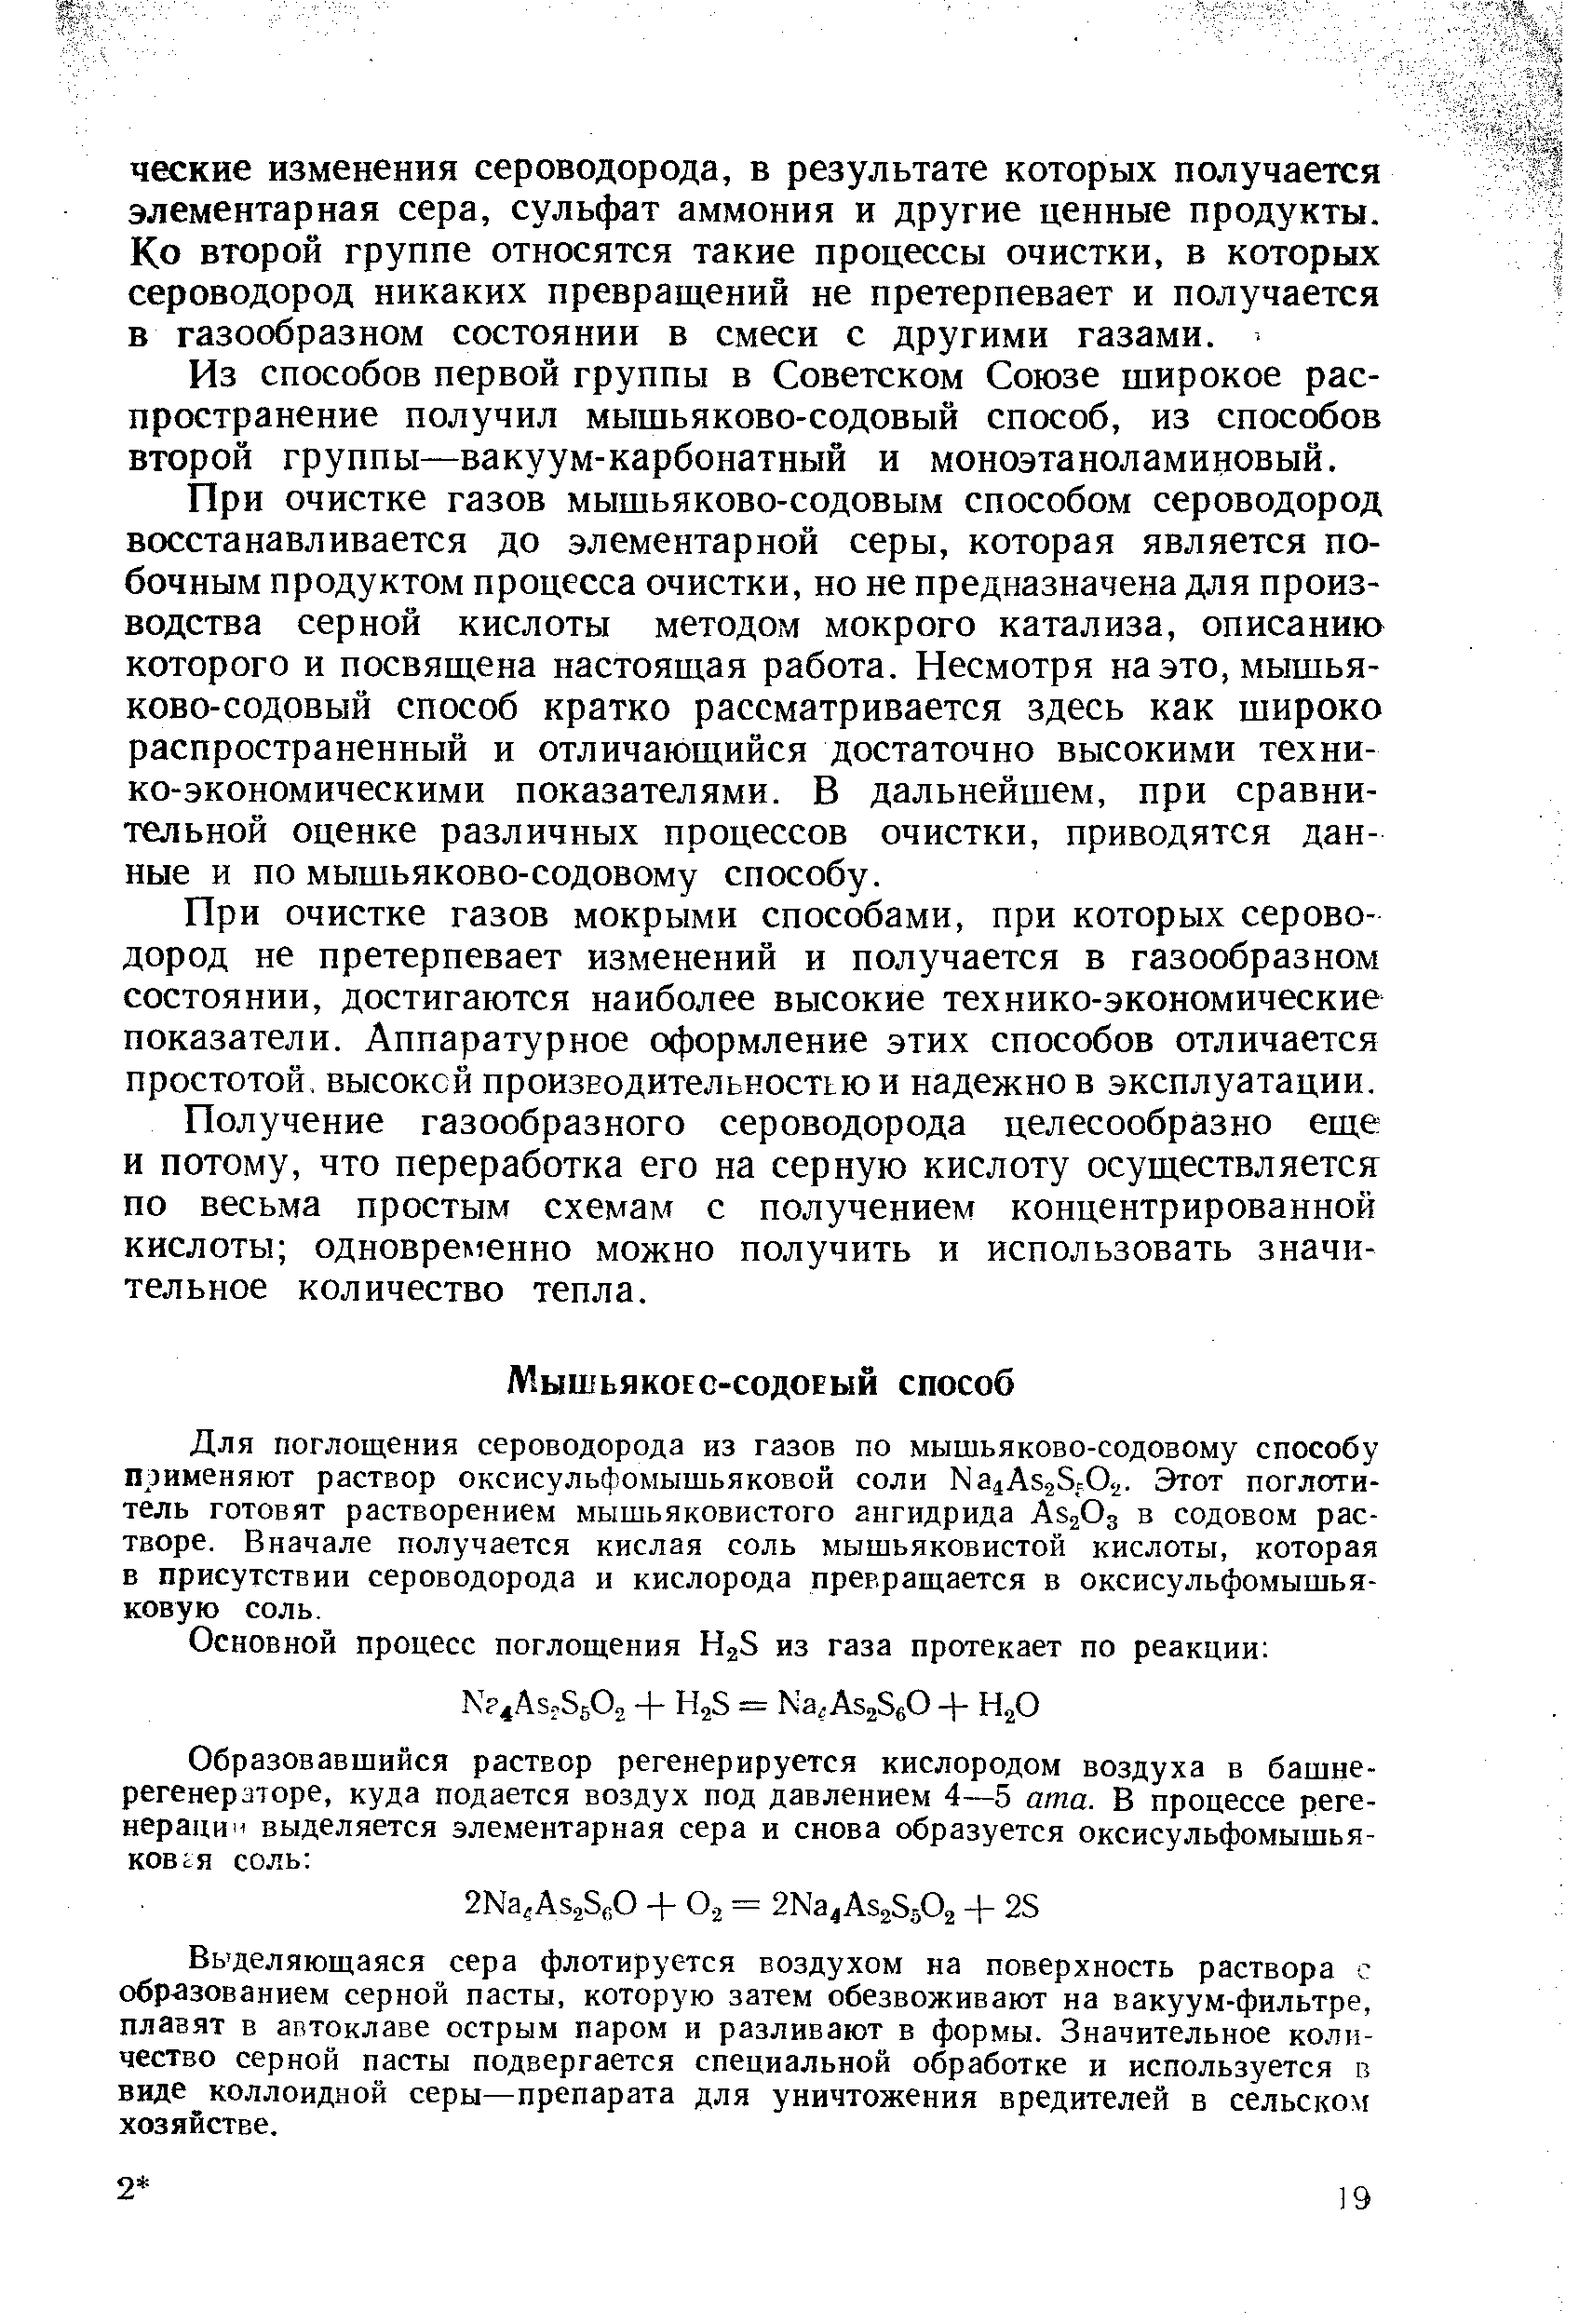 Из способов первой группы в Советском Союзе широкое распространение получил мышьяково-содовый способ, из способов второй группы—вакуум-карбонатный и моноэтаноламиновый.